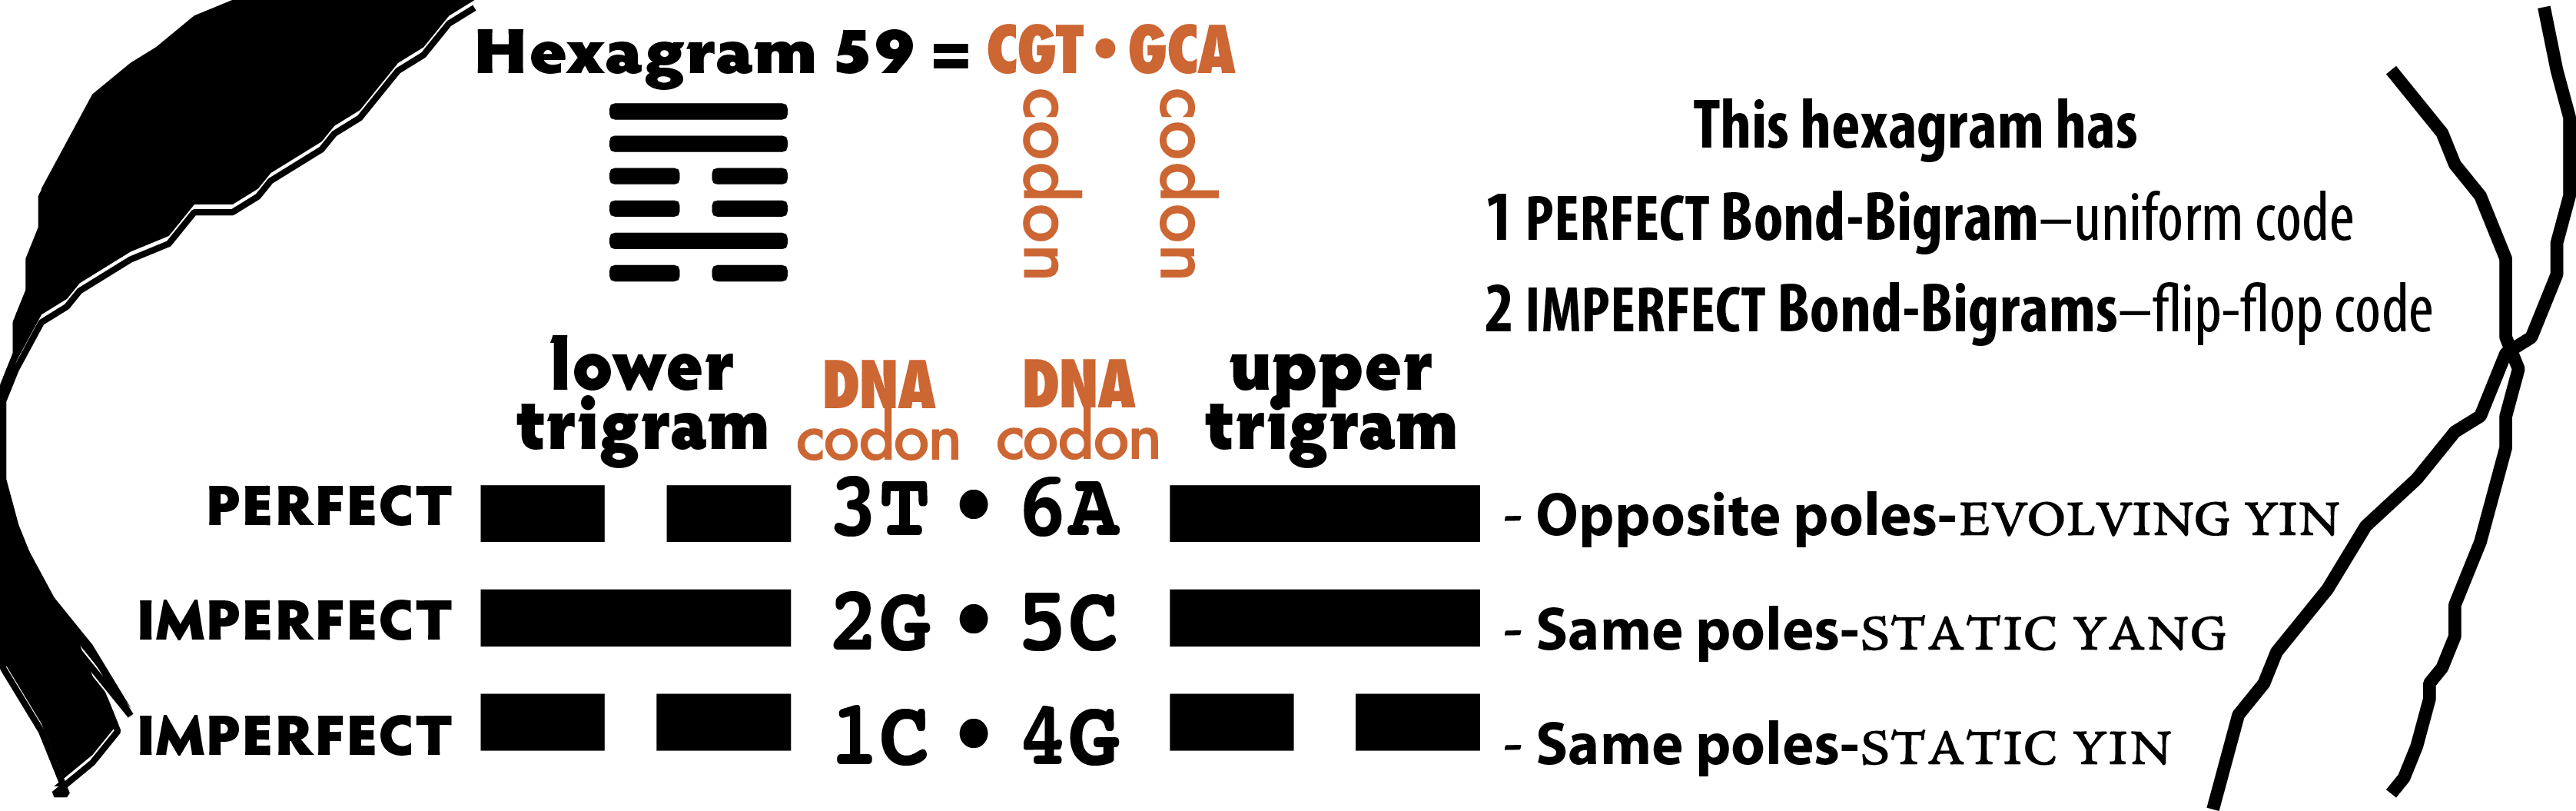 8-DNA-Hexagram 59